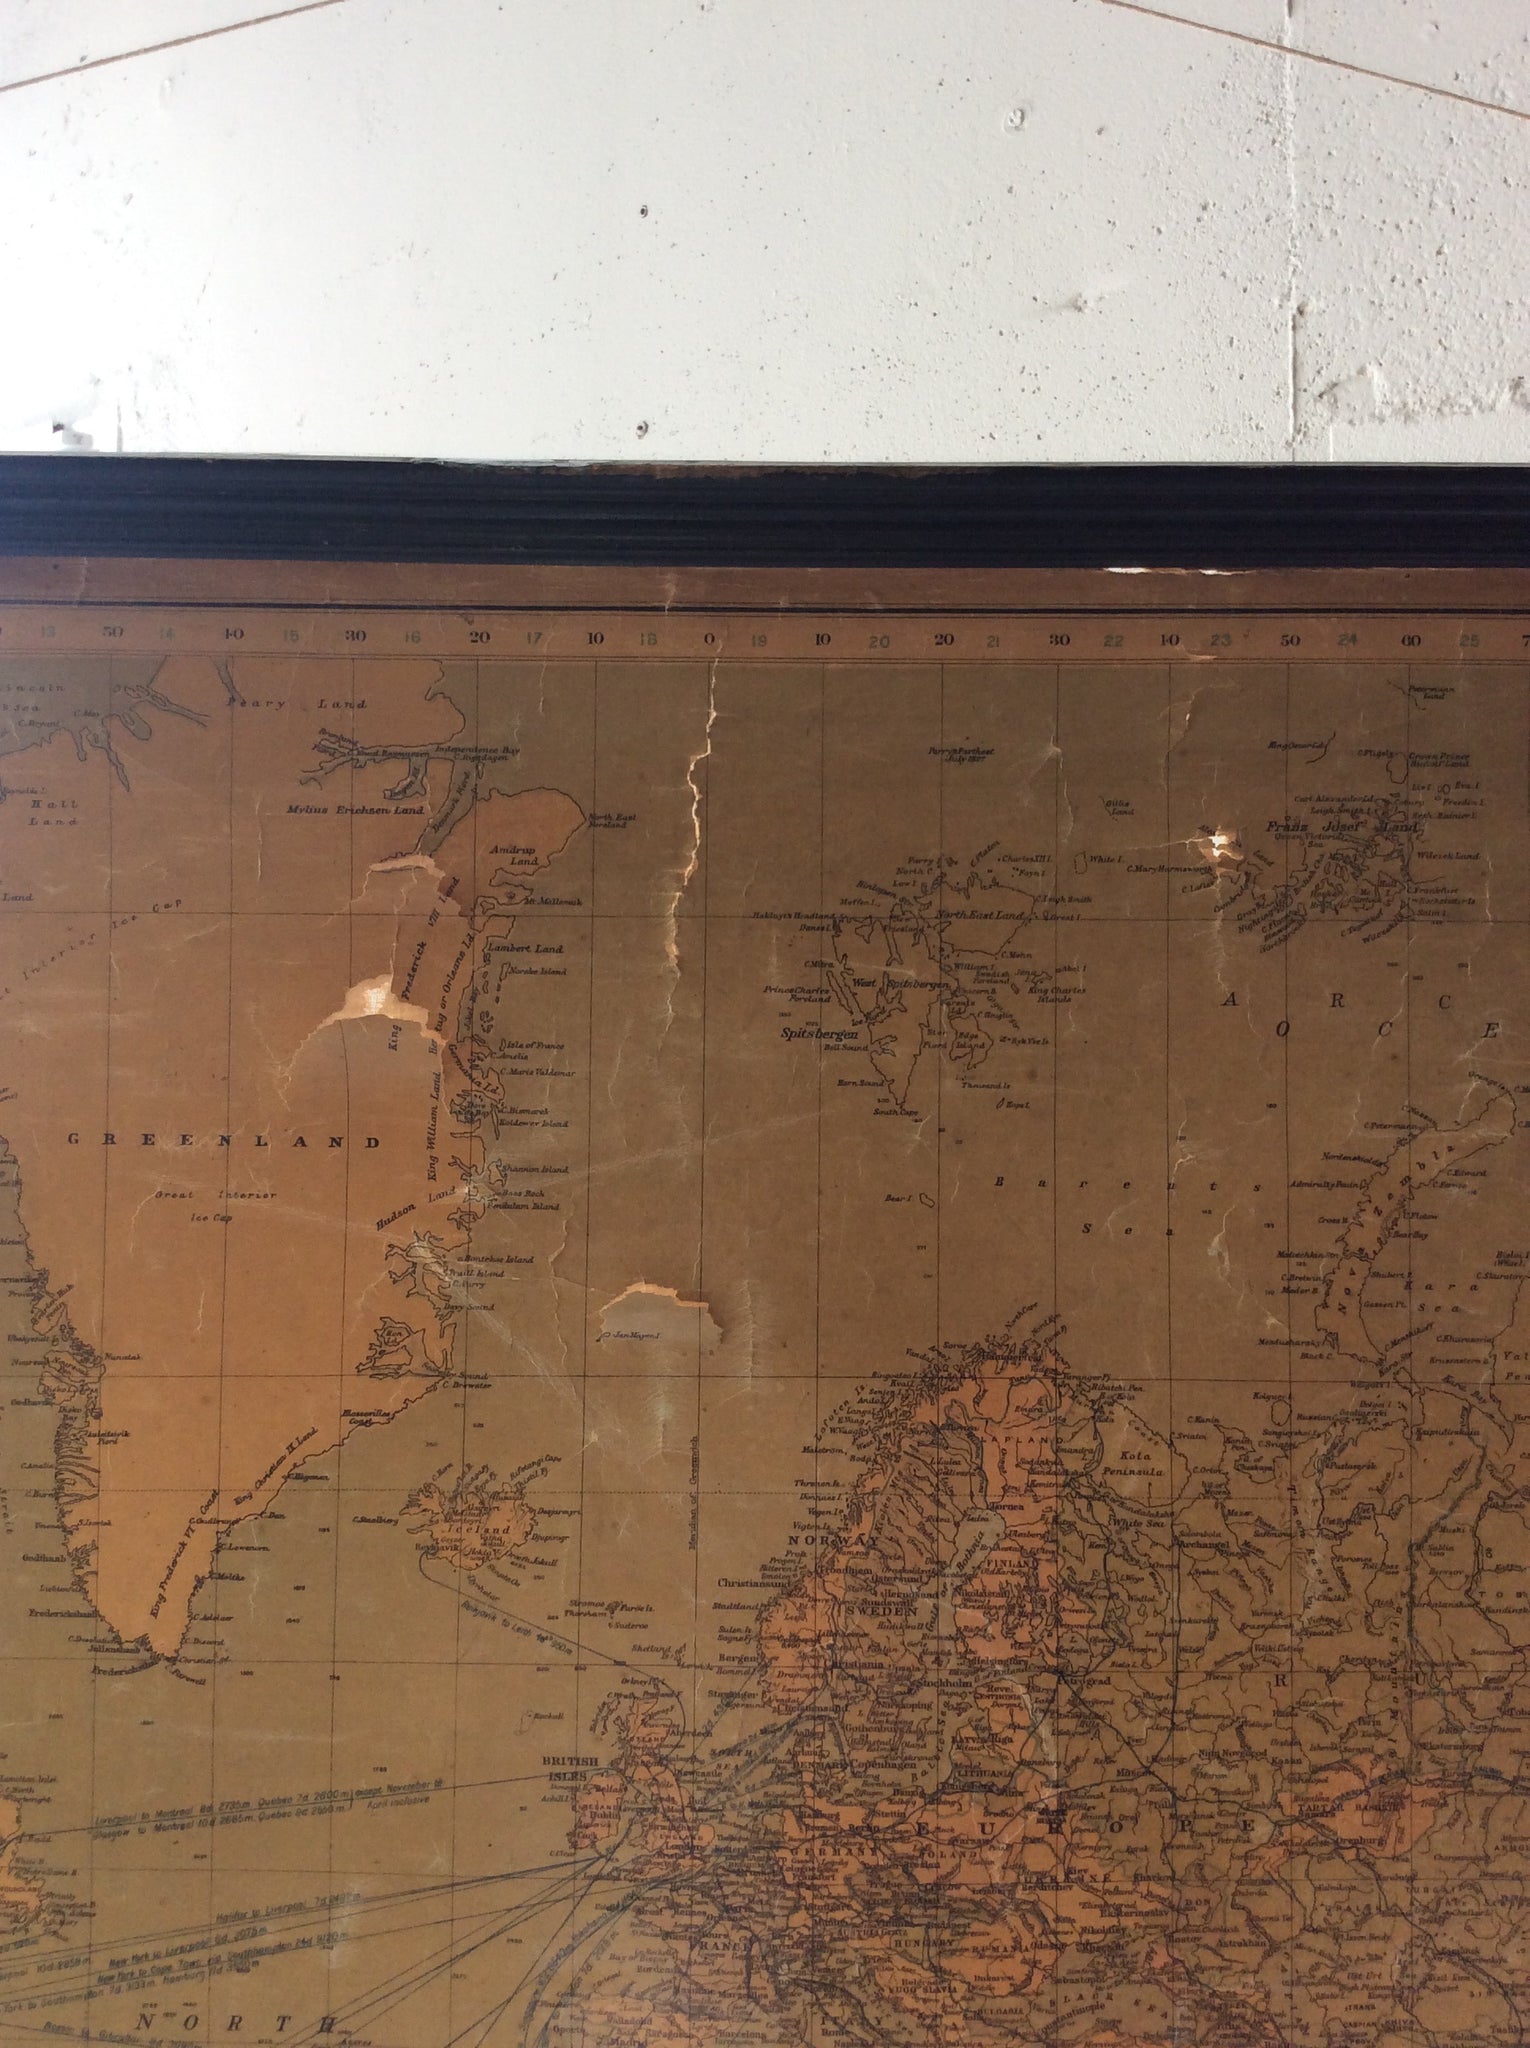 ワールド マップ / old the world map #0194